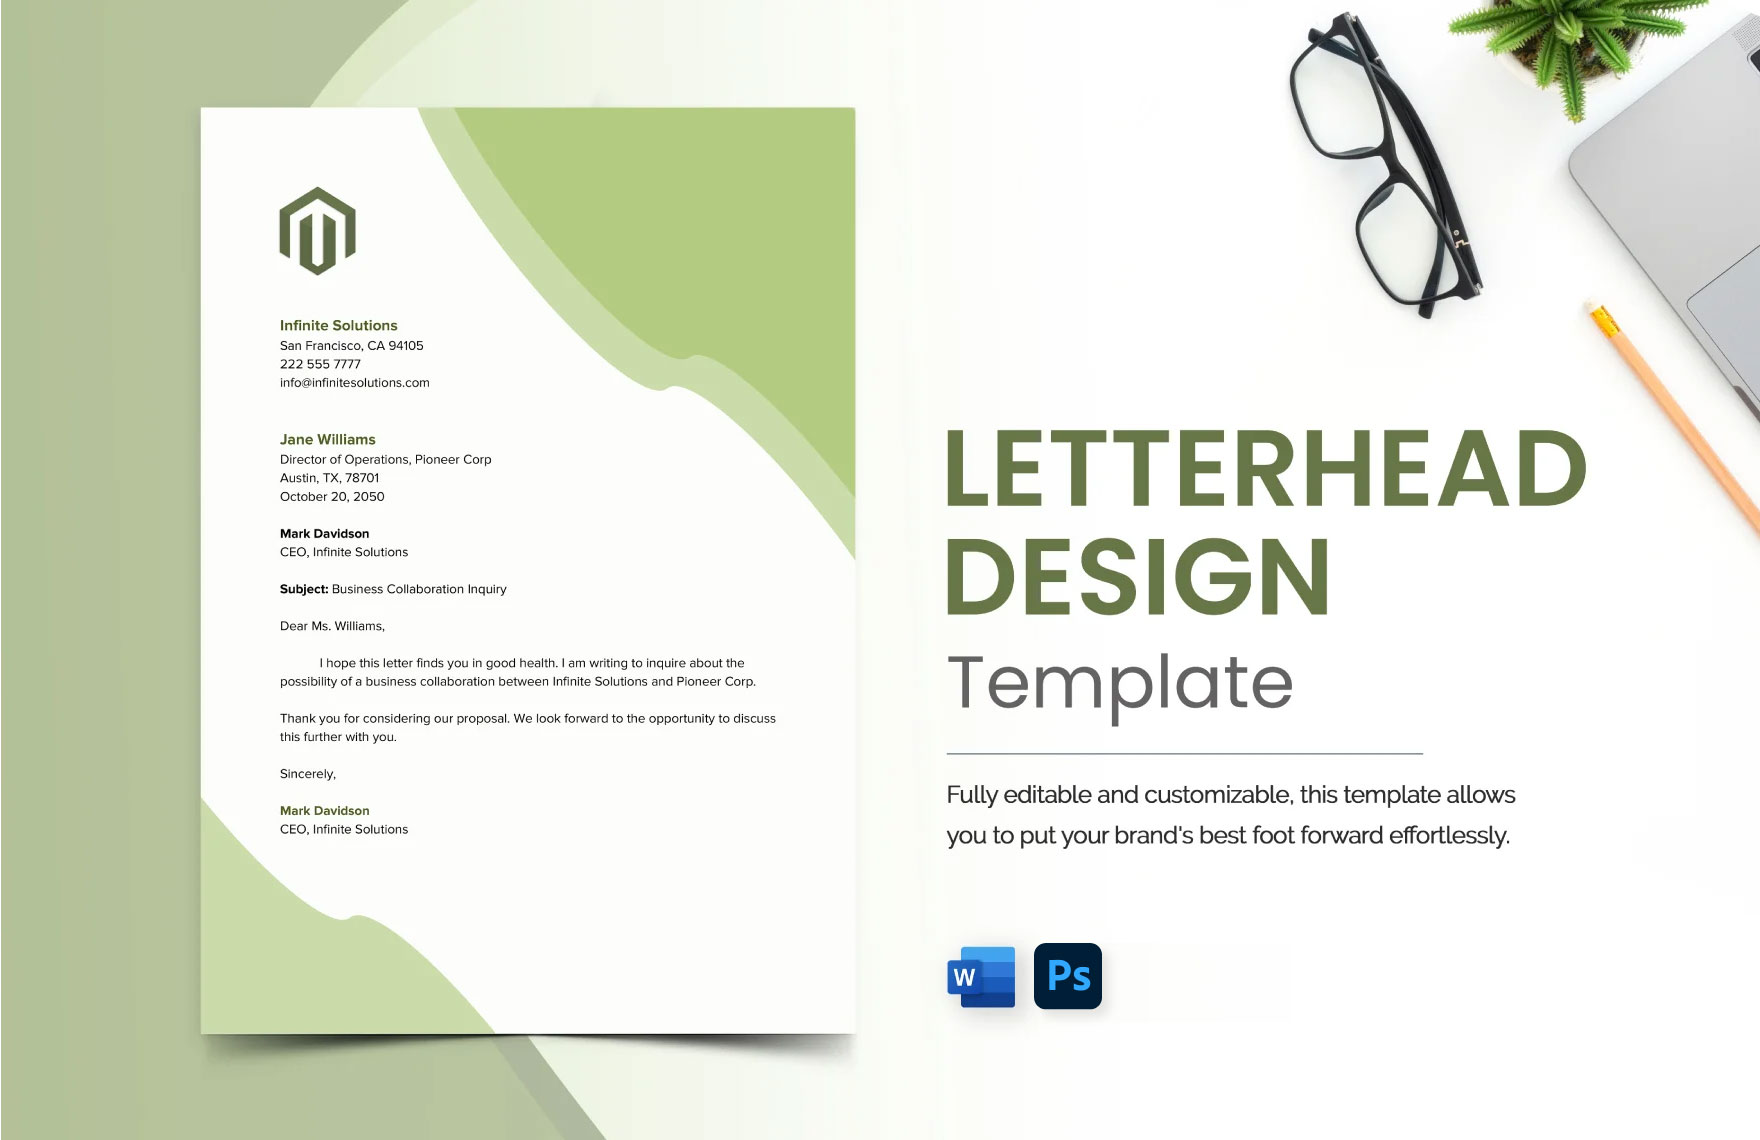 Letterhead Design Template